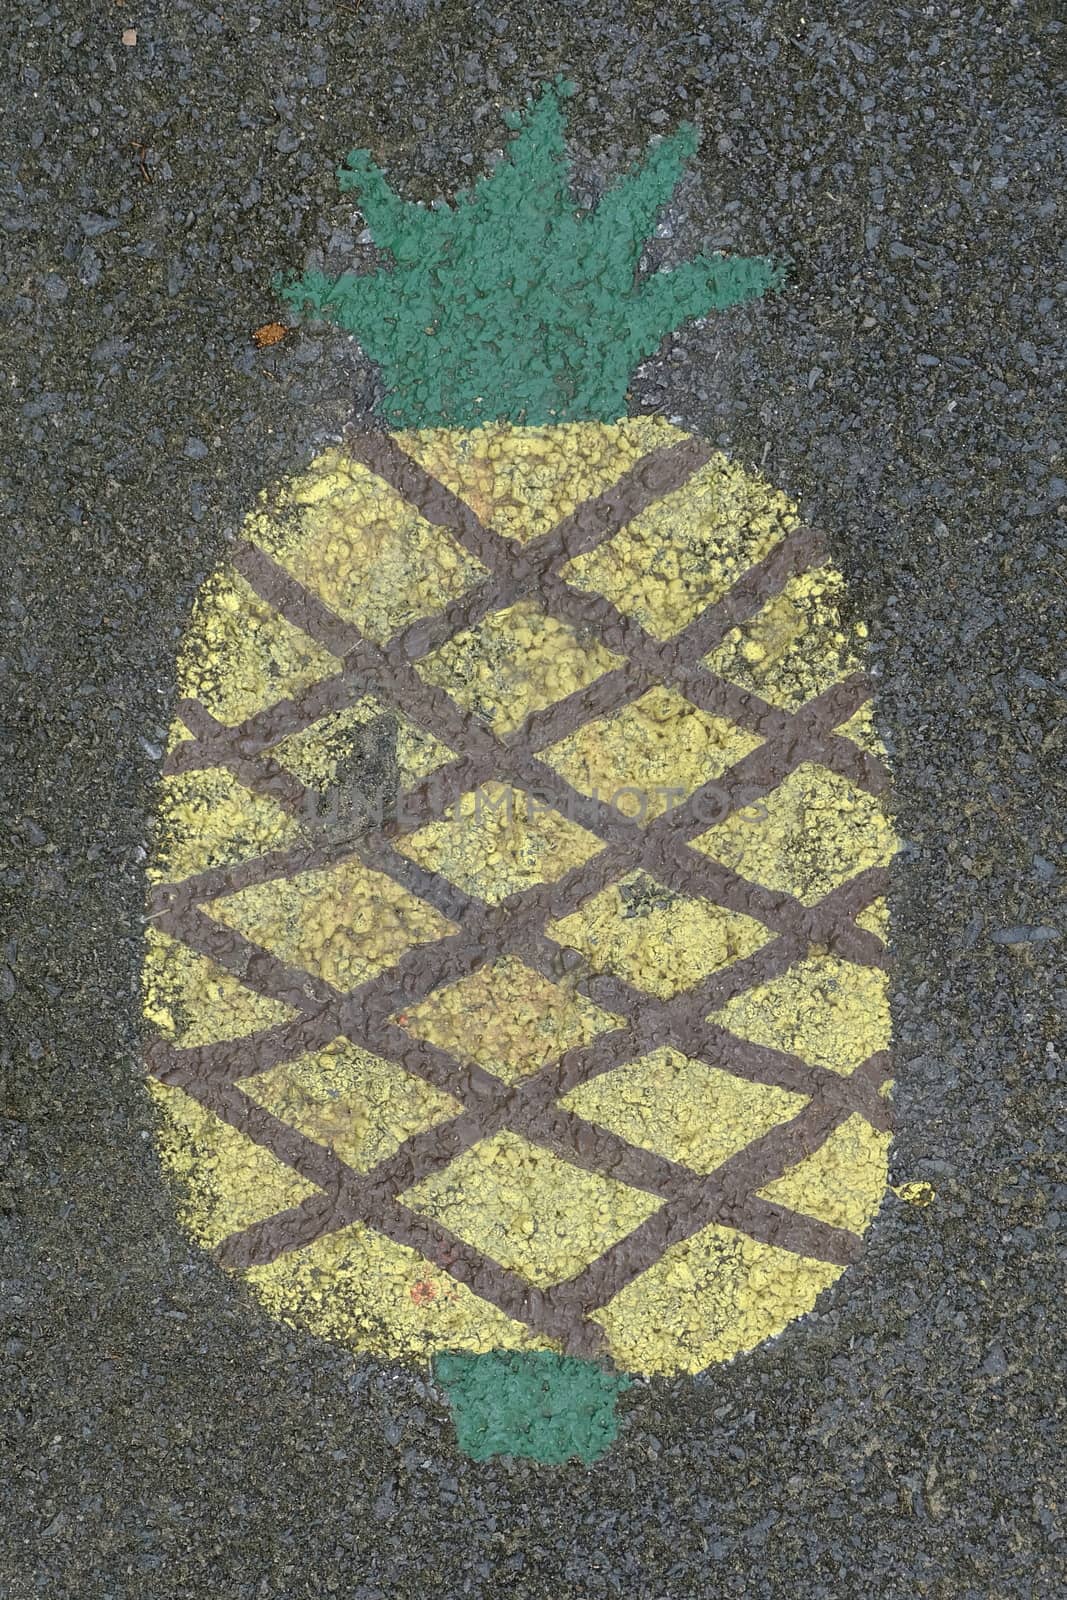 Pineapple Painting on Asphalt Ground.